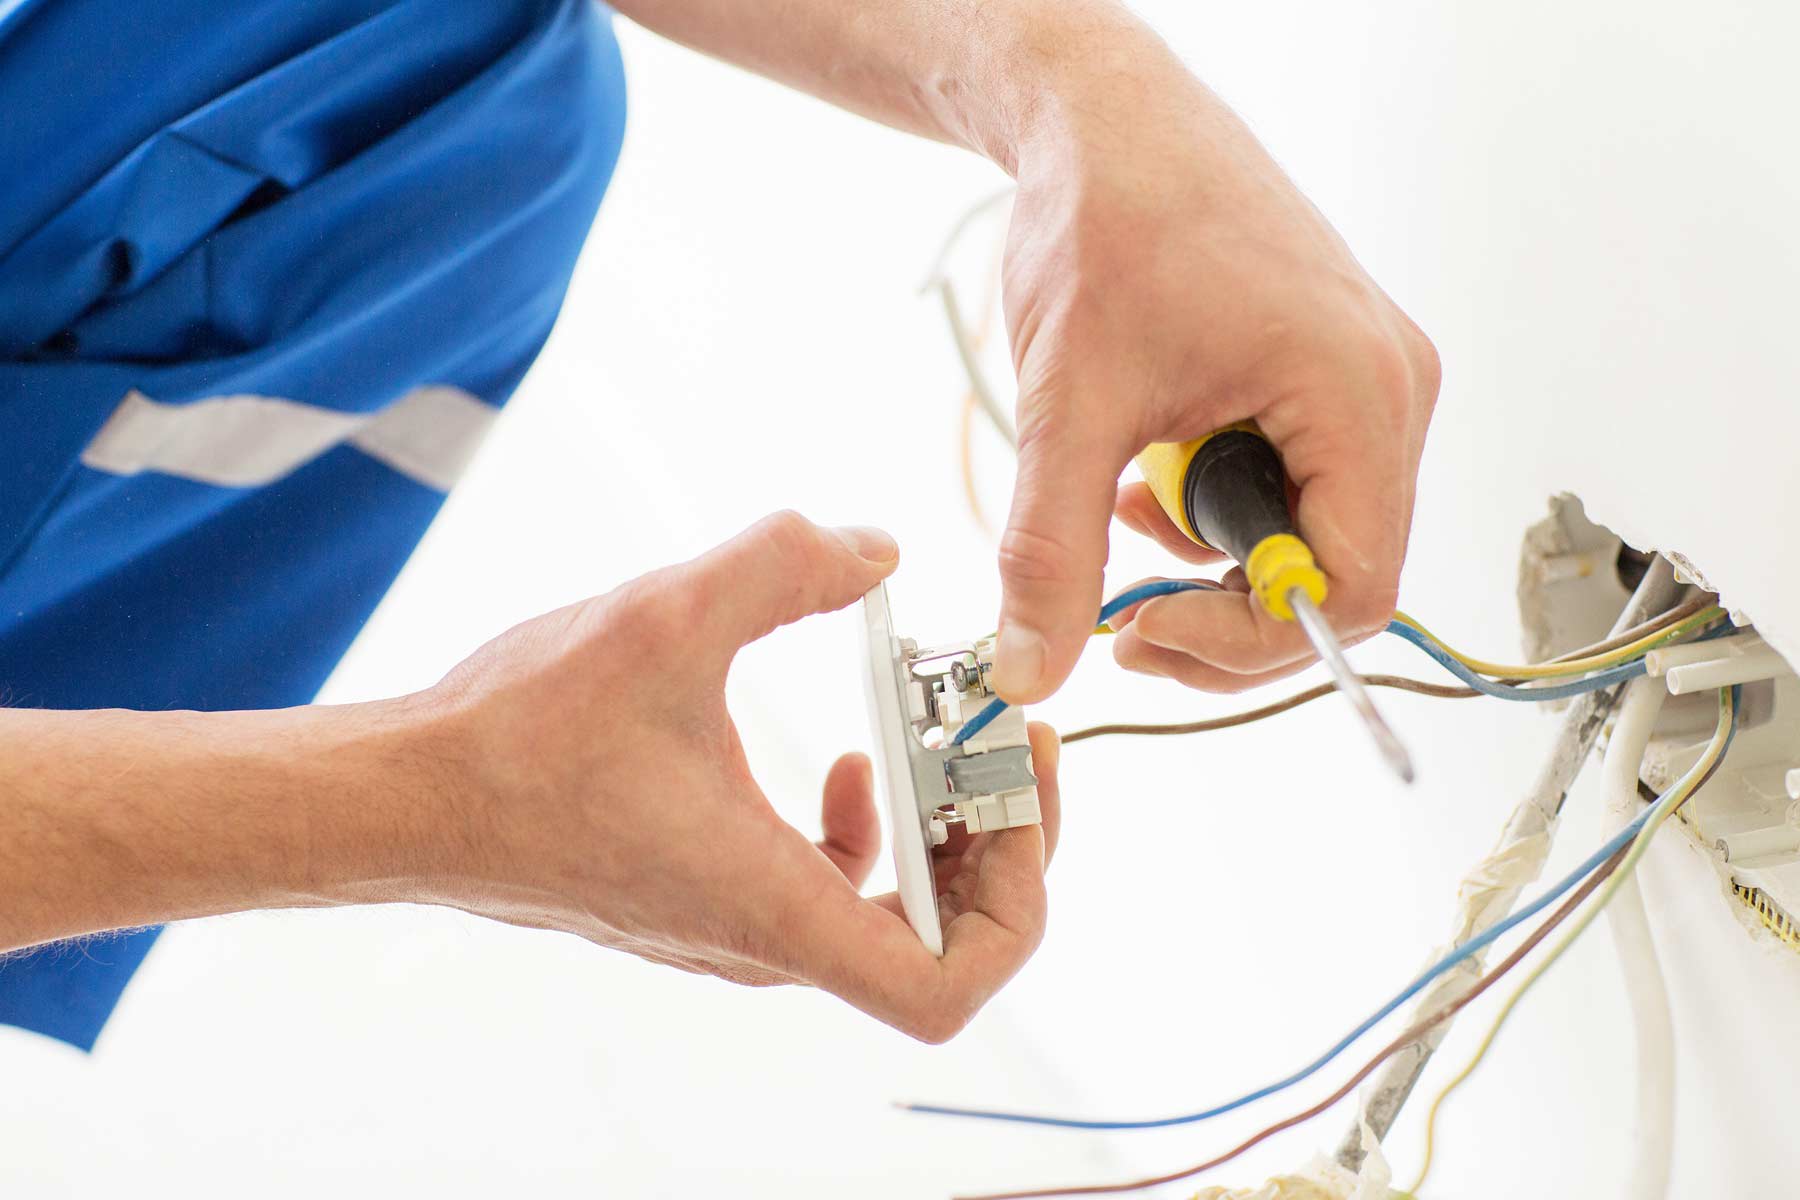 Find a electrical repair service near you